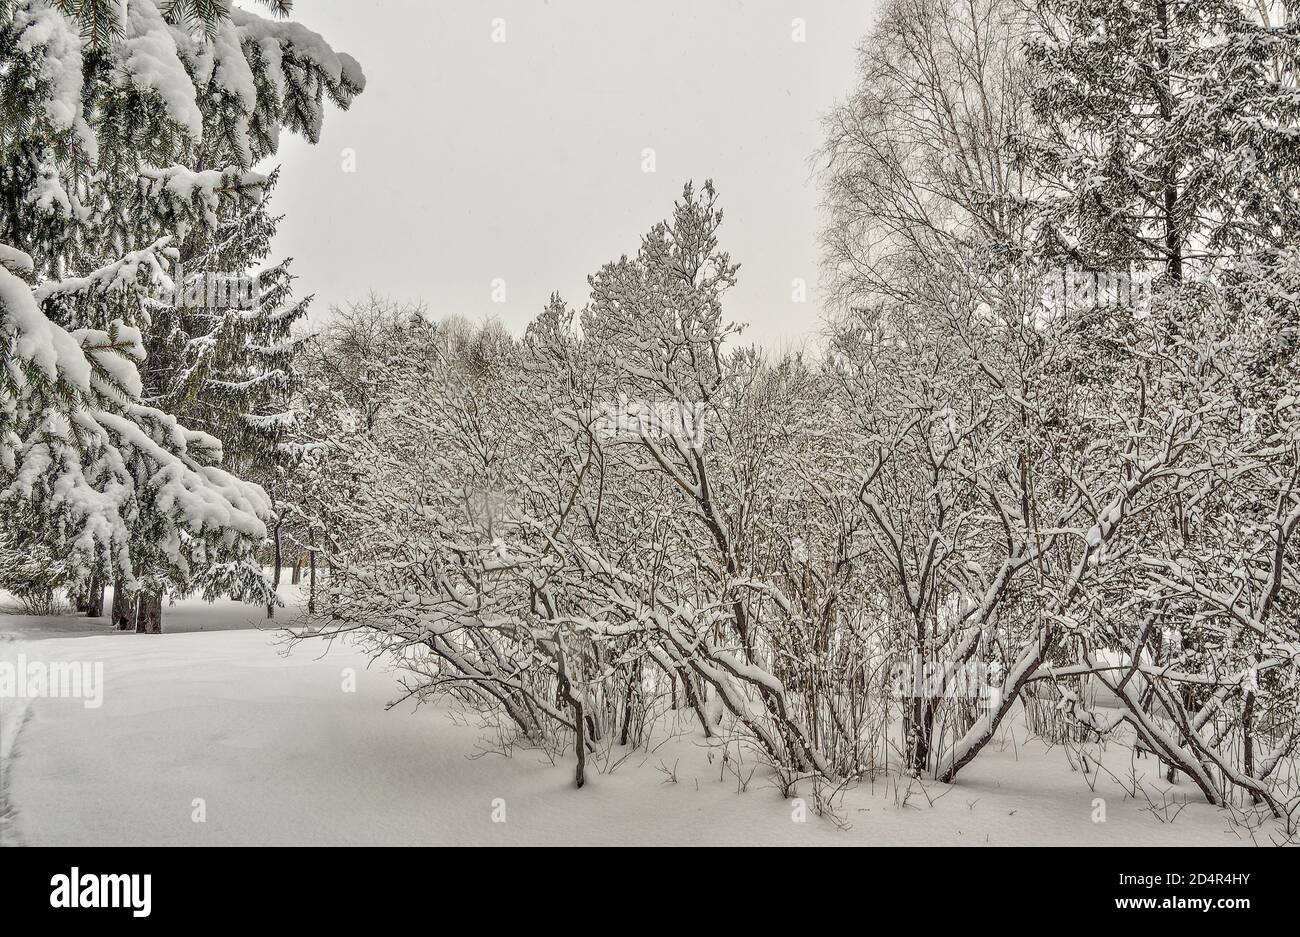 Schönheit der Winterlandschaft im verschneiten Stadtpark. Wunderland mit weißem Schnee und Reif bedeckten Bäumen und Sträuchern - schönes Wintermärchen. Flauschig Stockfoto